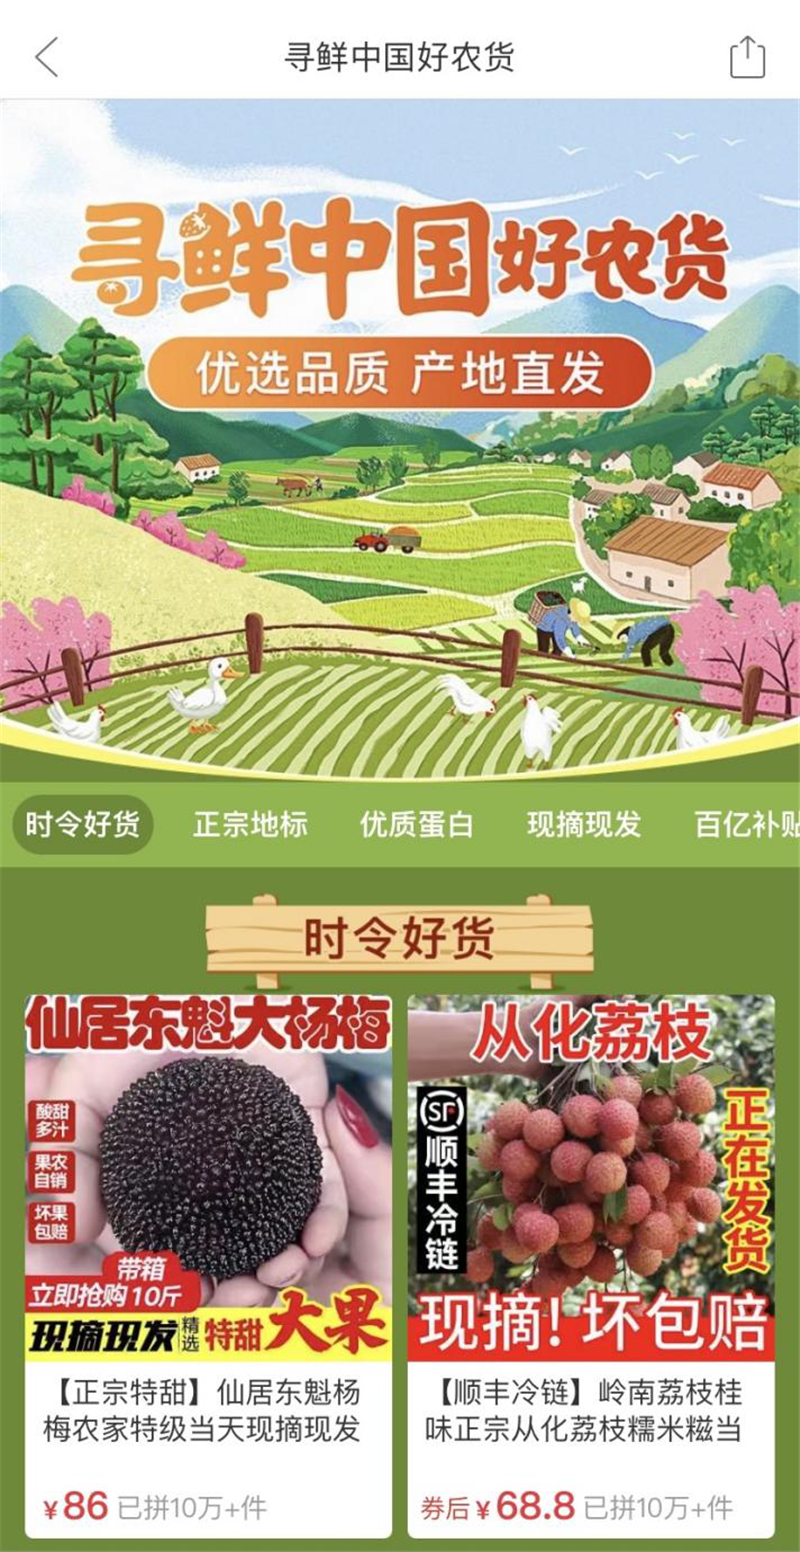 电商版“舌尖上的中国”上线啦！“寻鲜中国好农货”公益助农活动启动